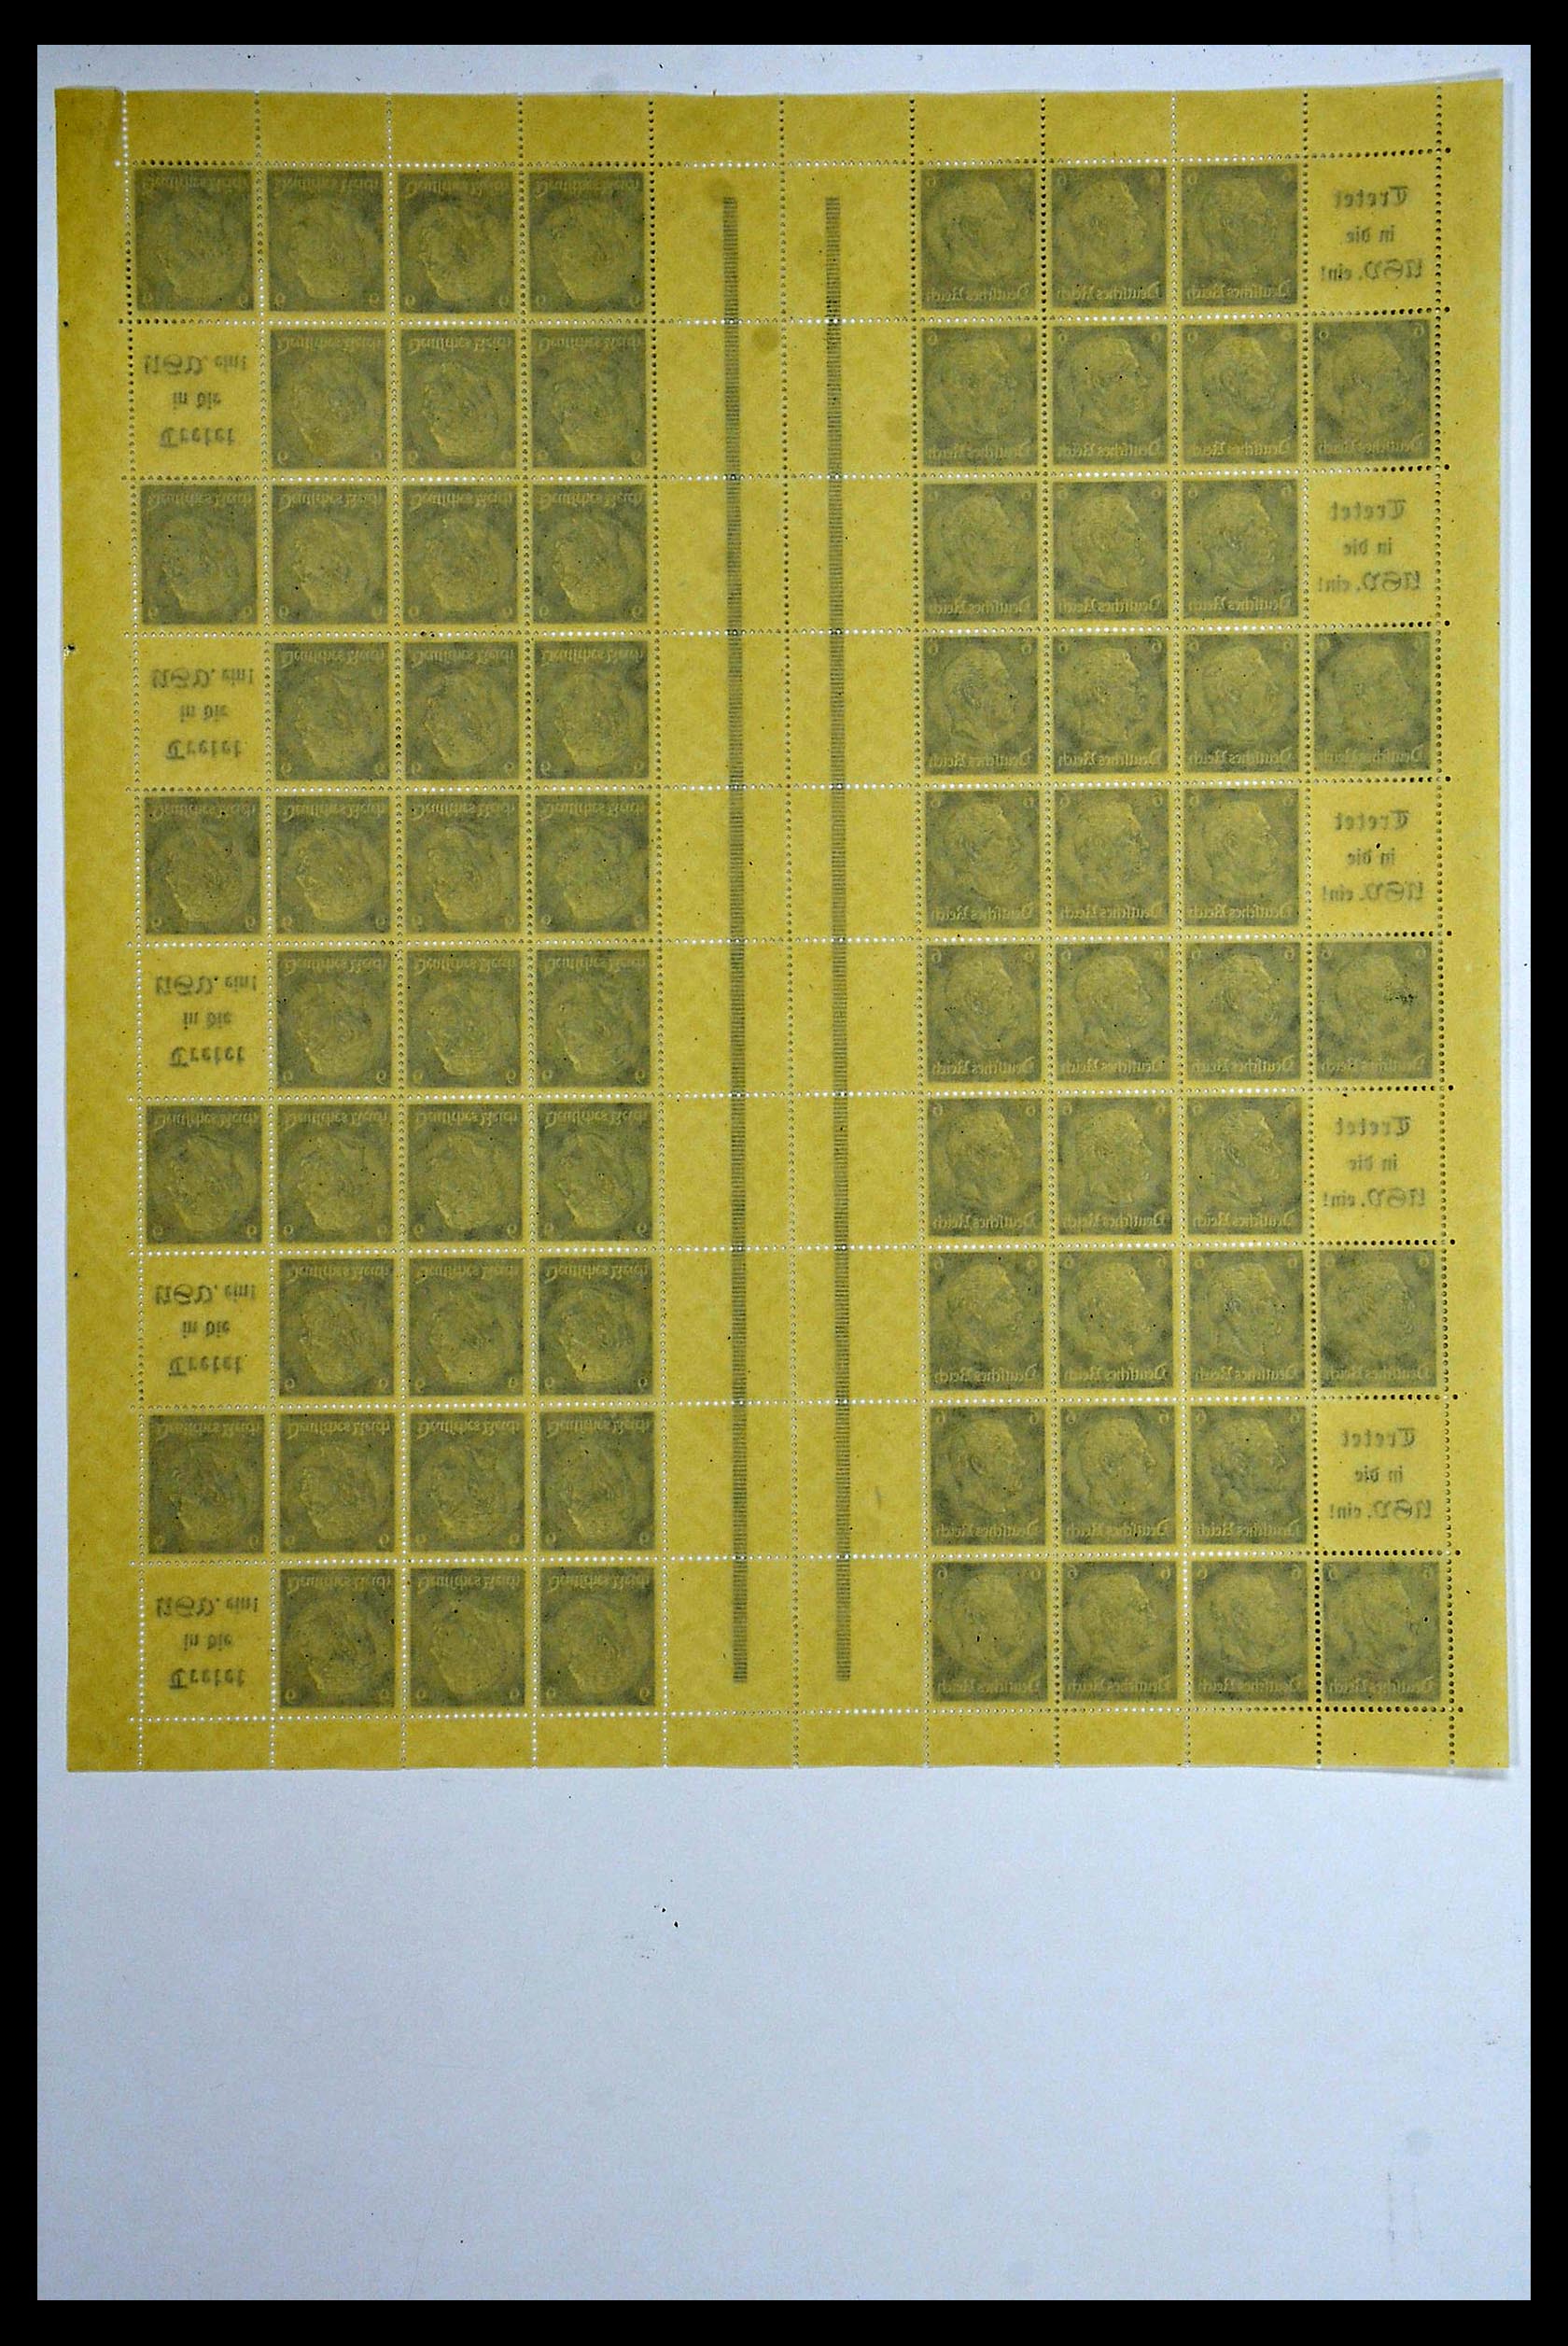 34164 040 - Stamp collection 34164 German Reich Markenheftchenbogen 1933-1942.